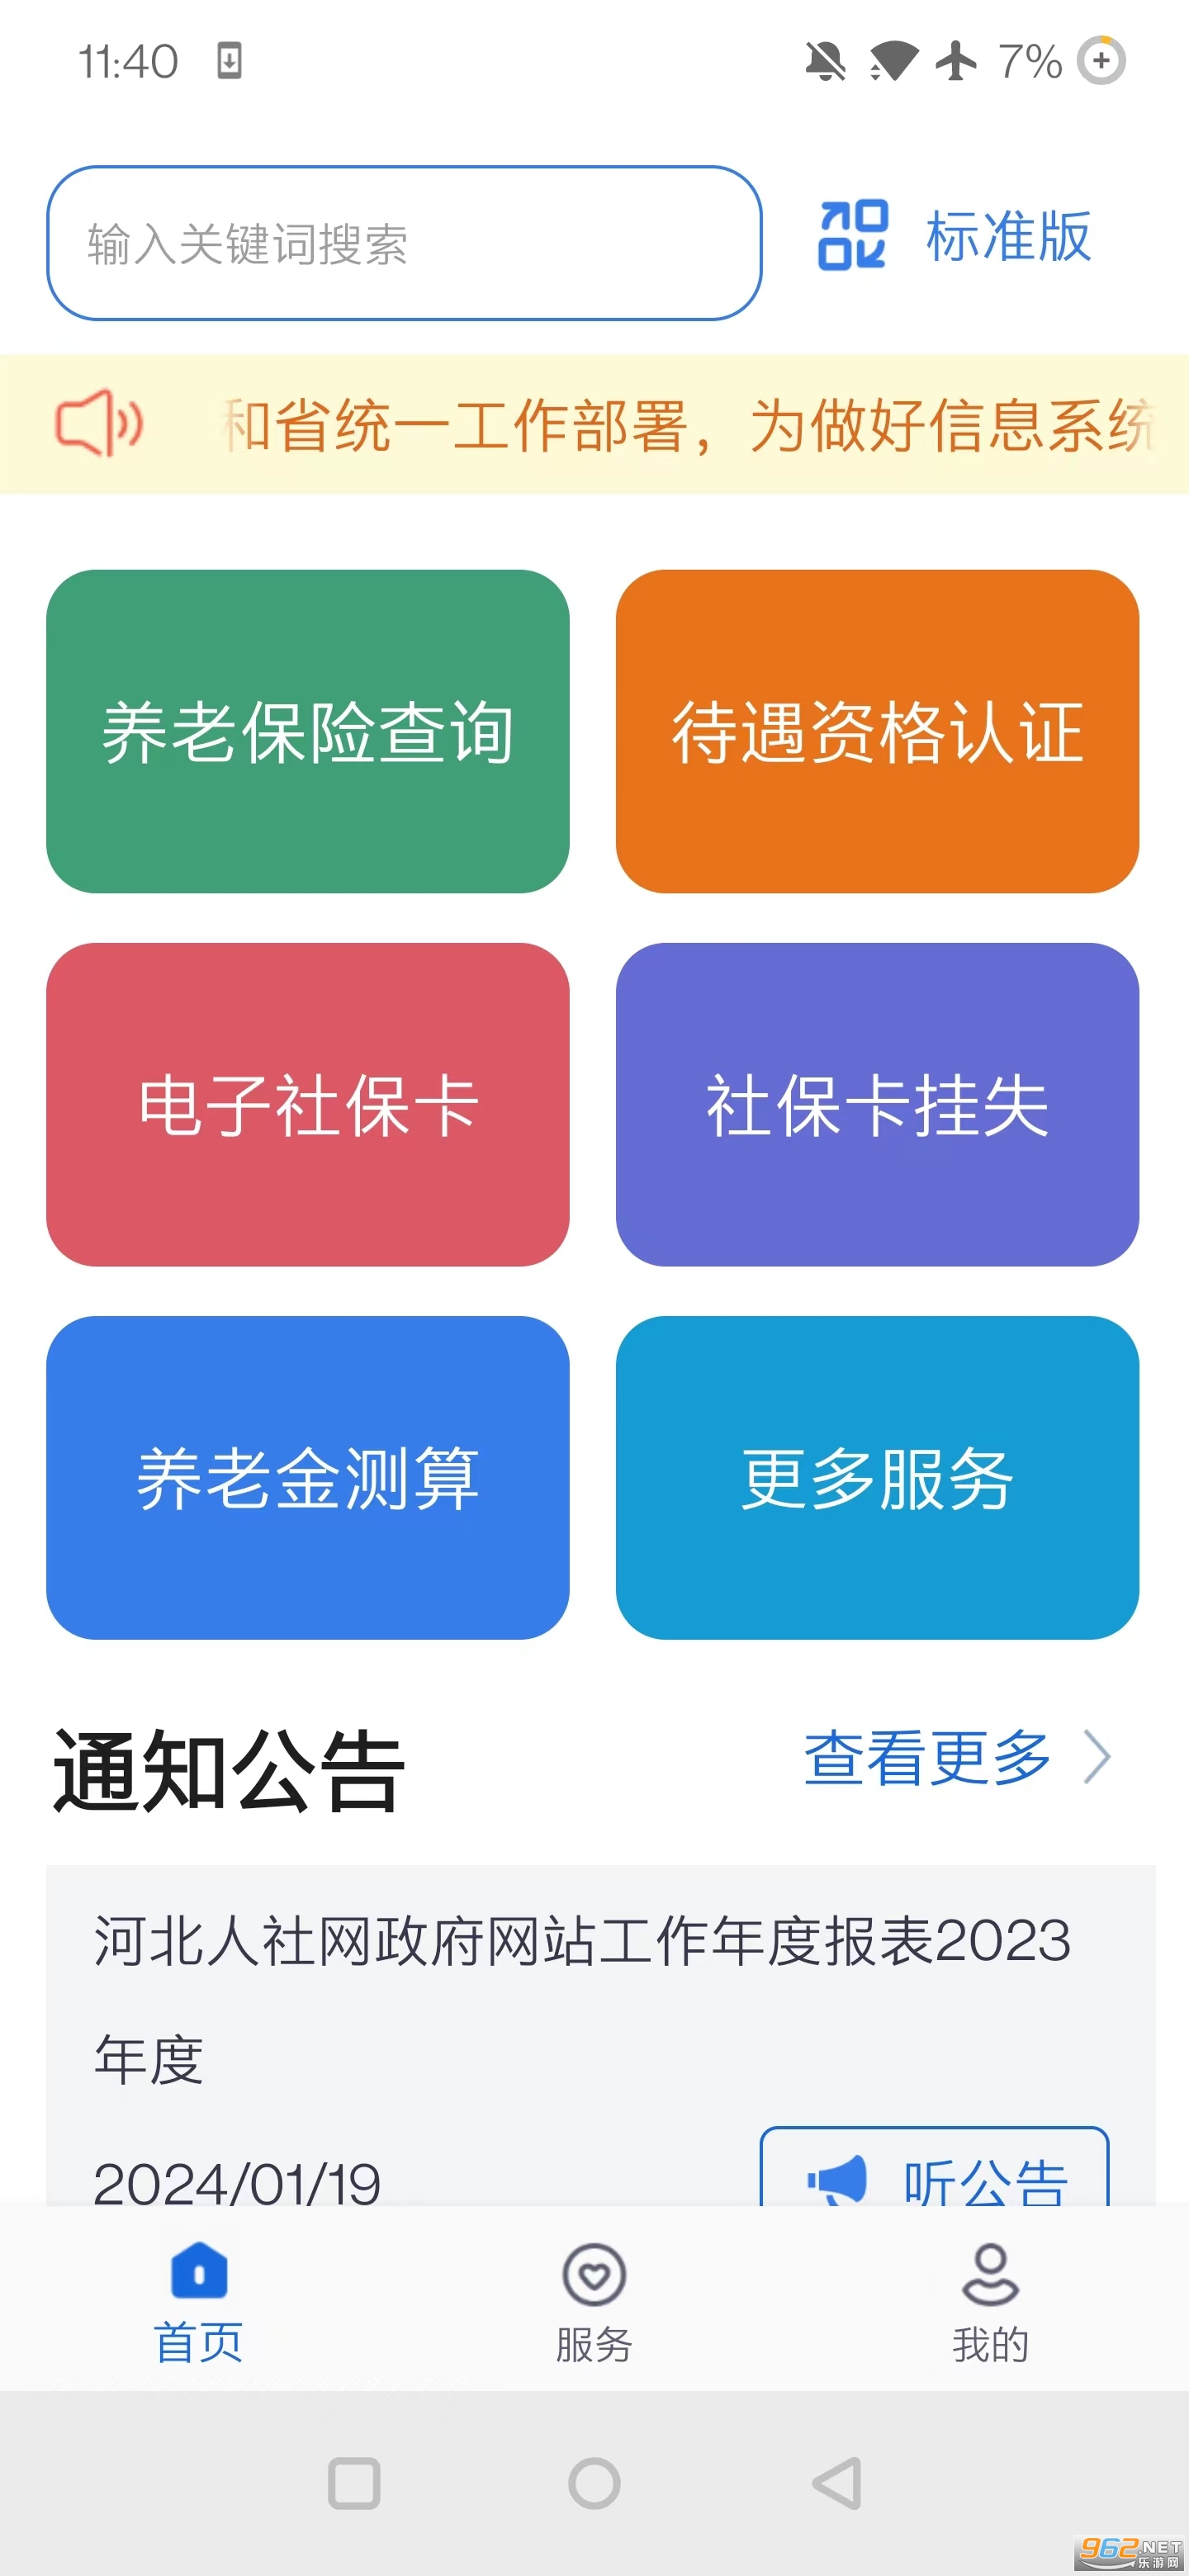 河北人社一体化公共服务平台v9.2.30 官方版截图3